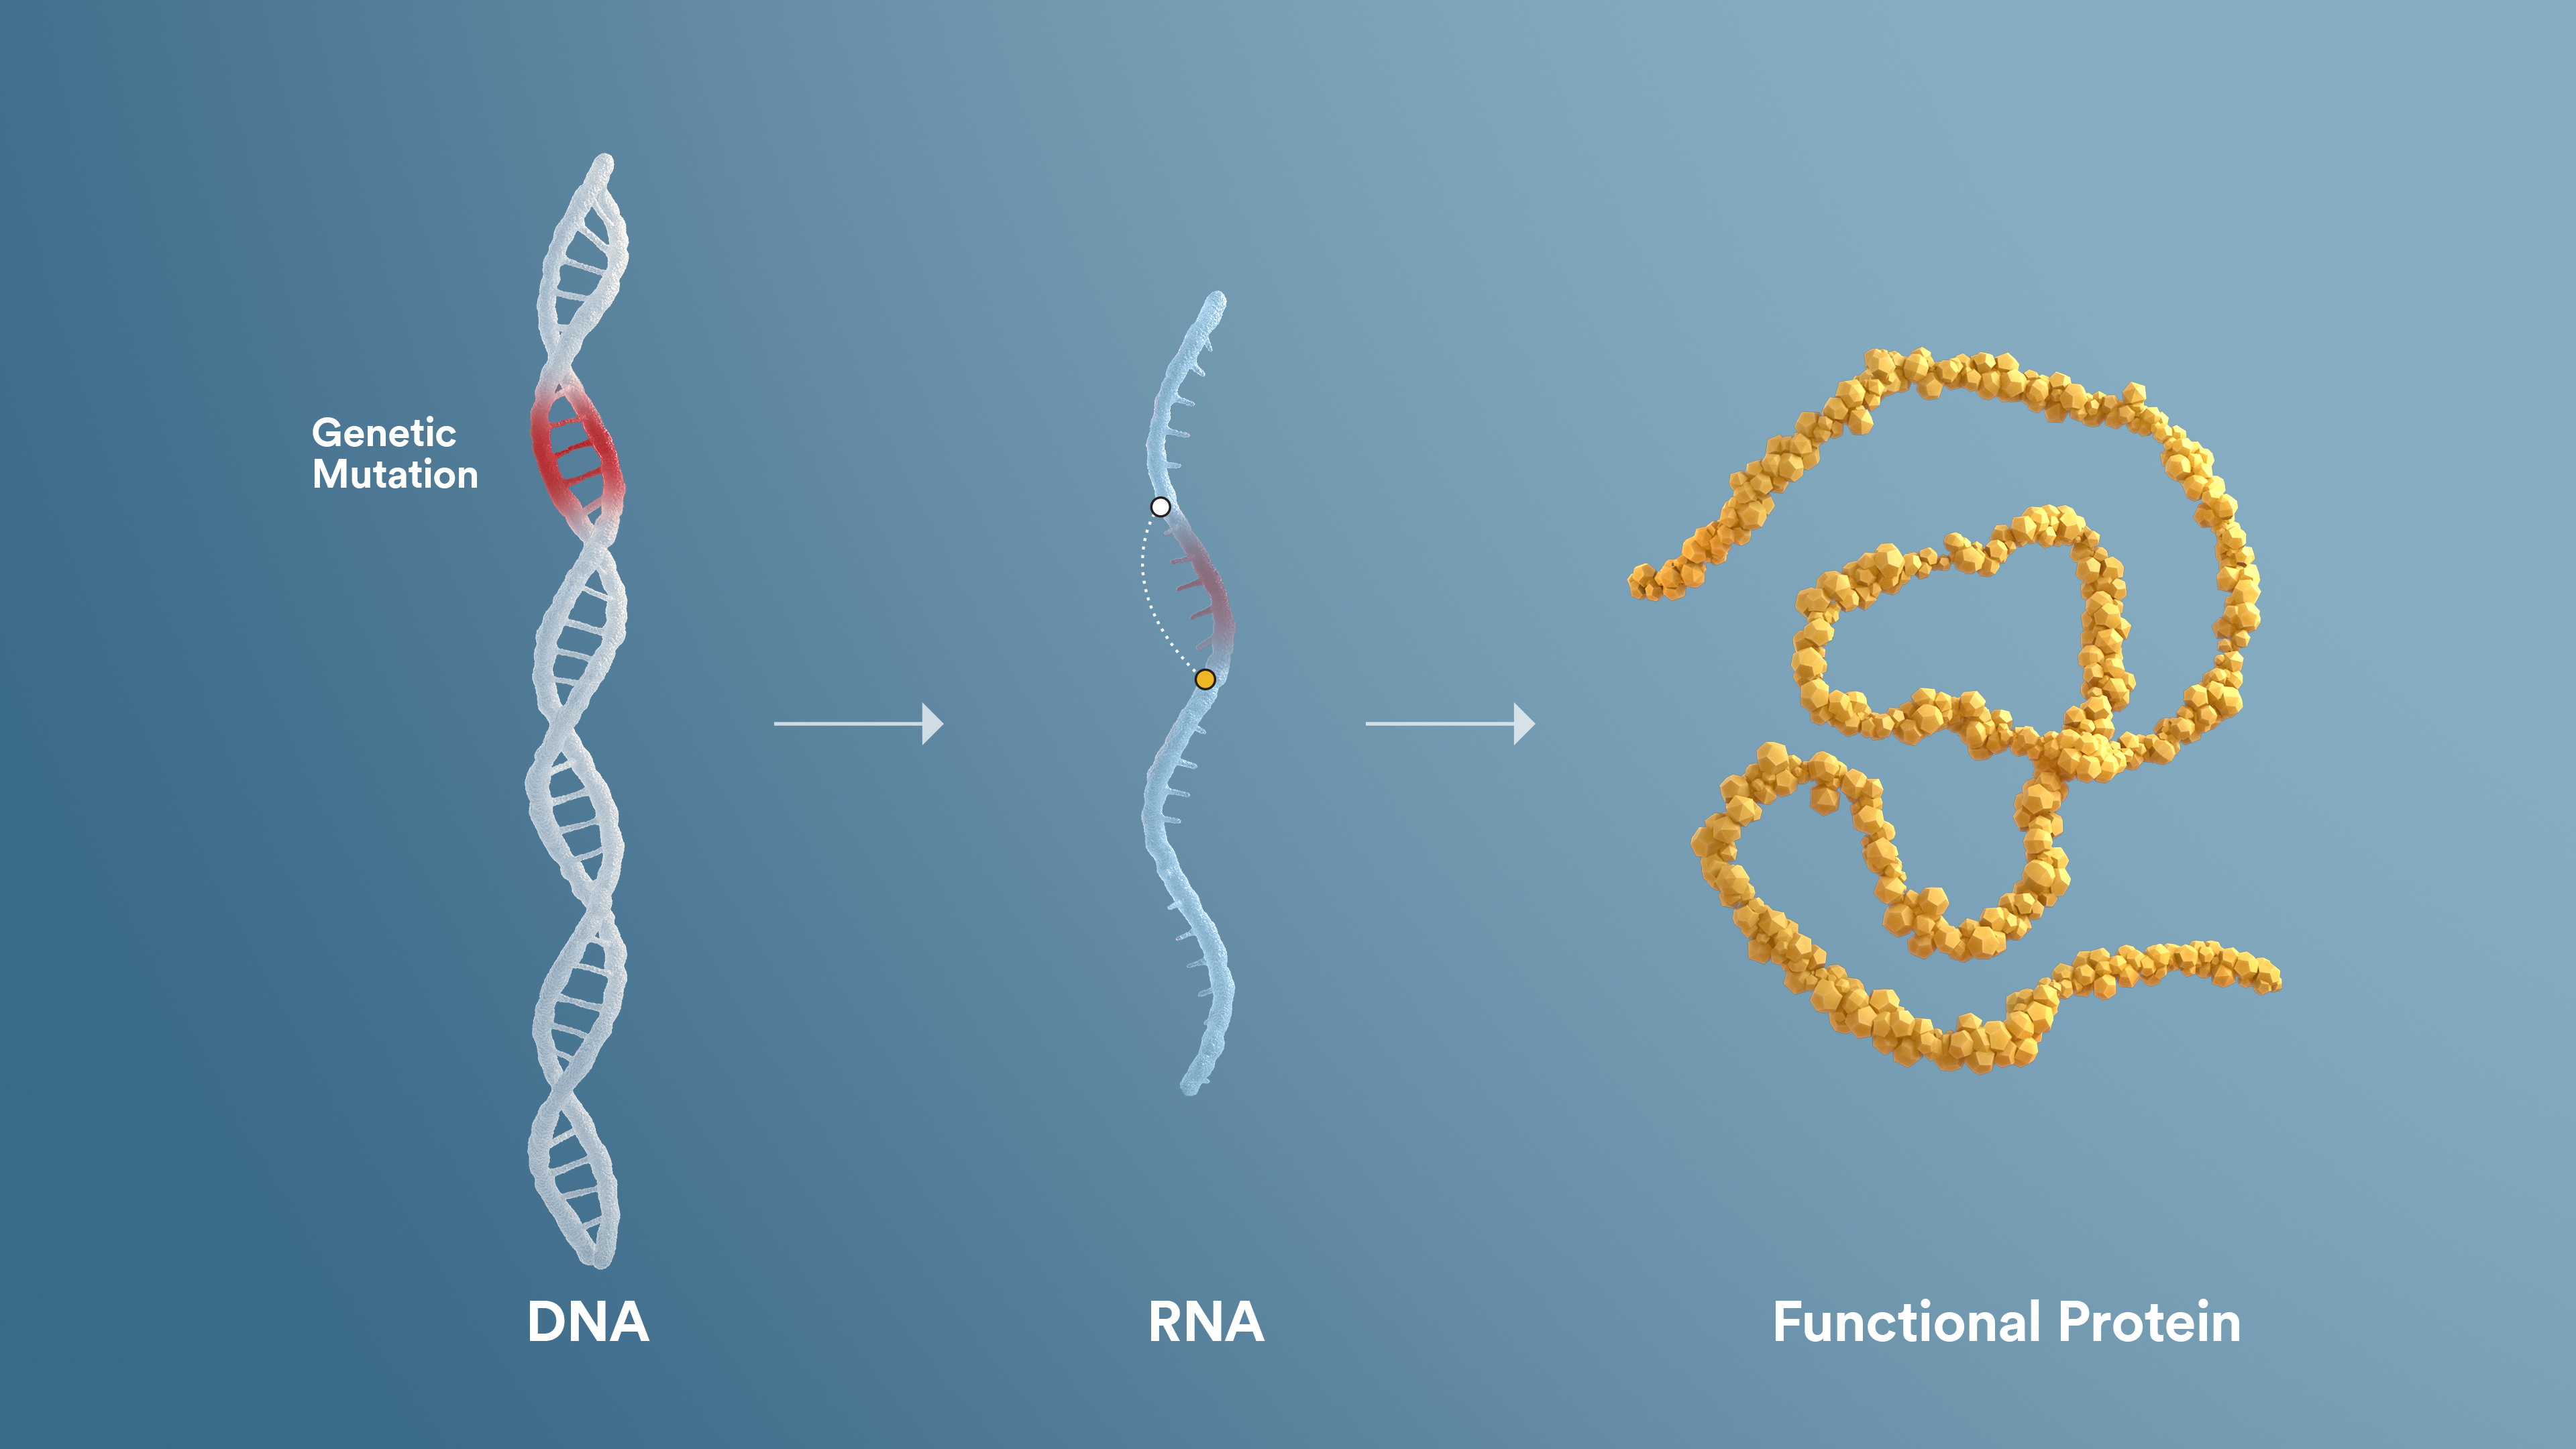 RNA exon skipping